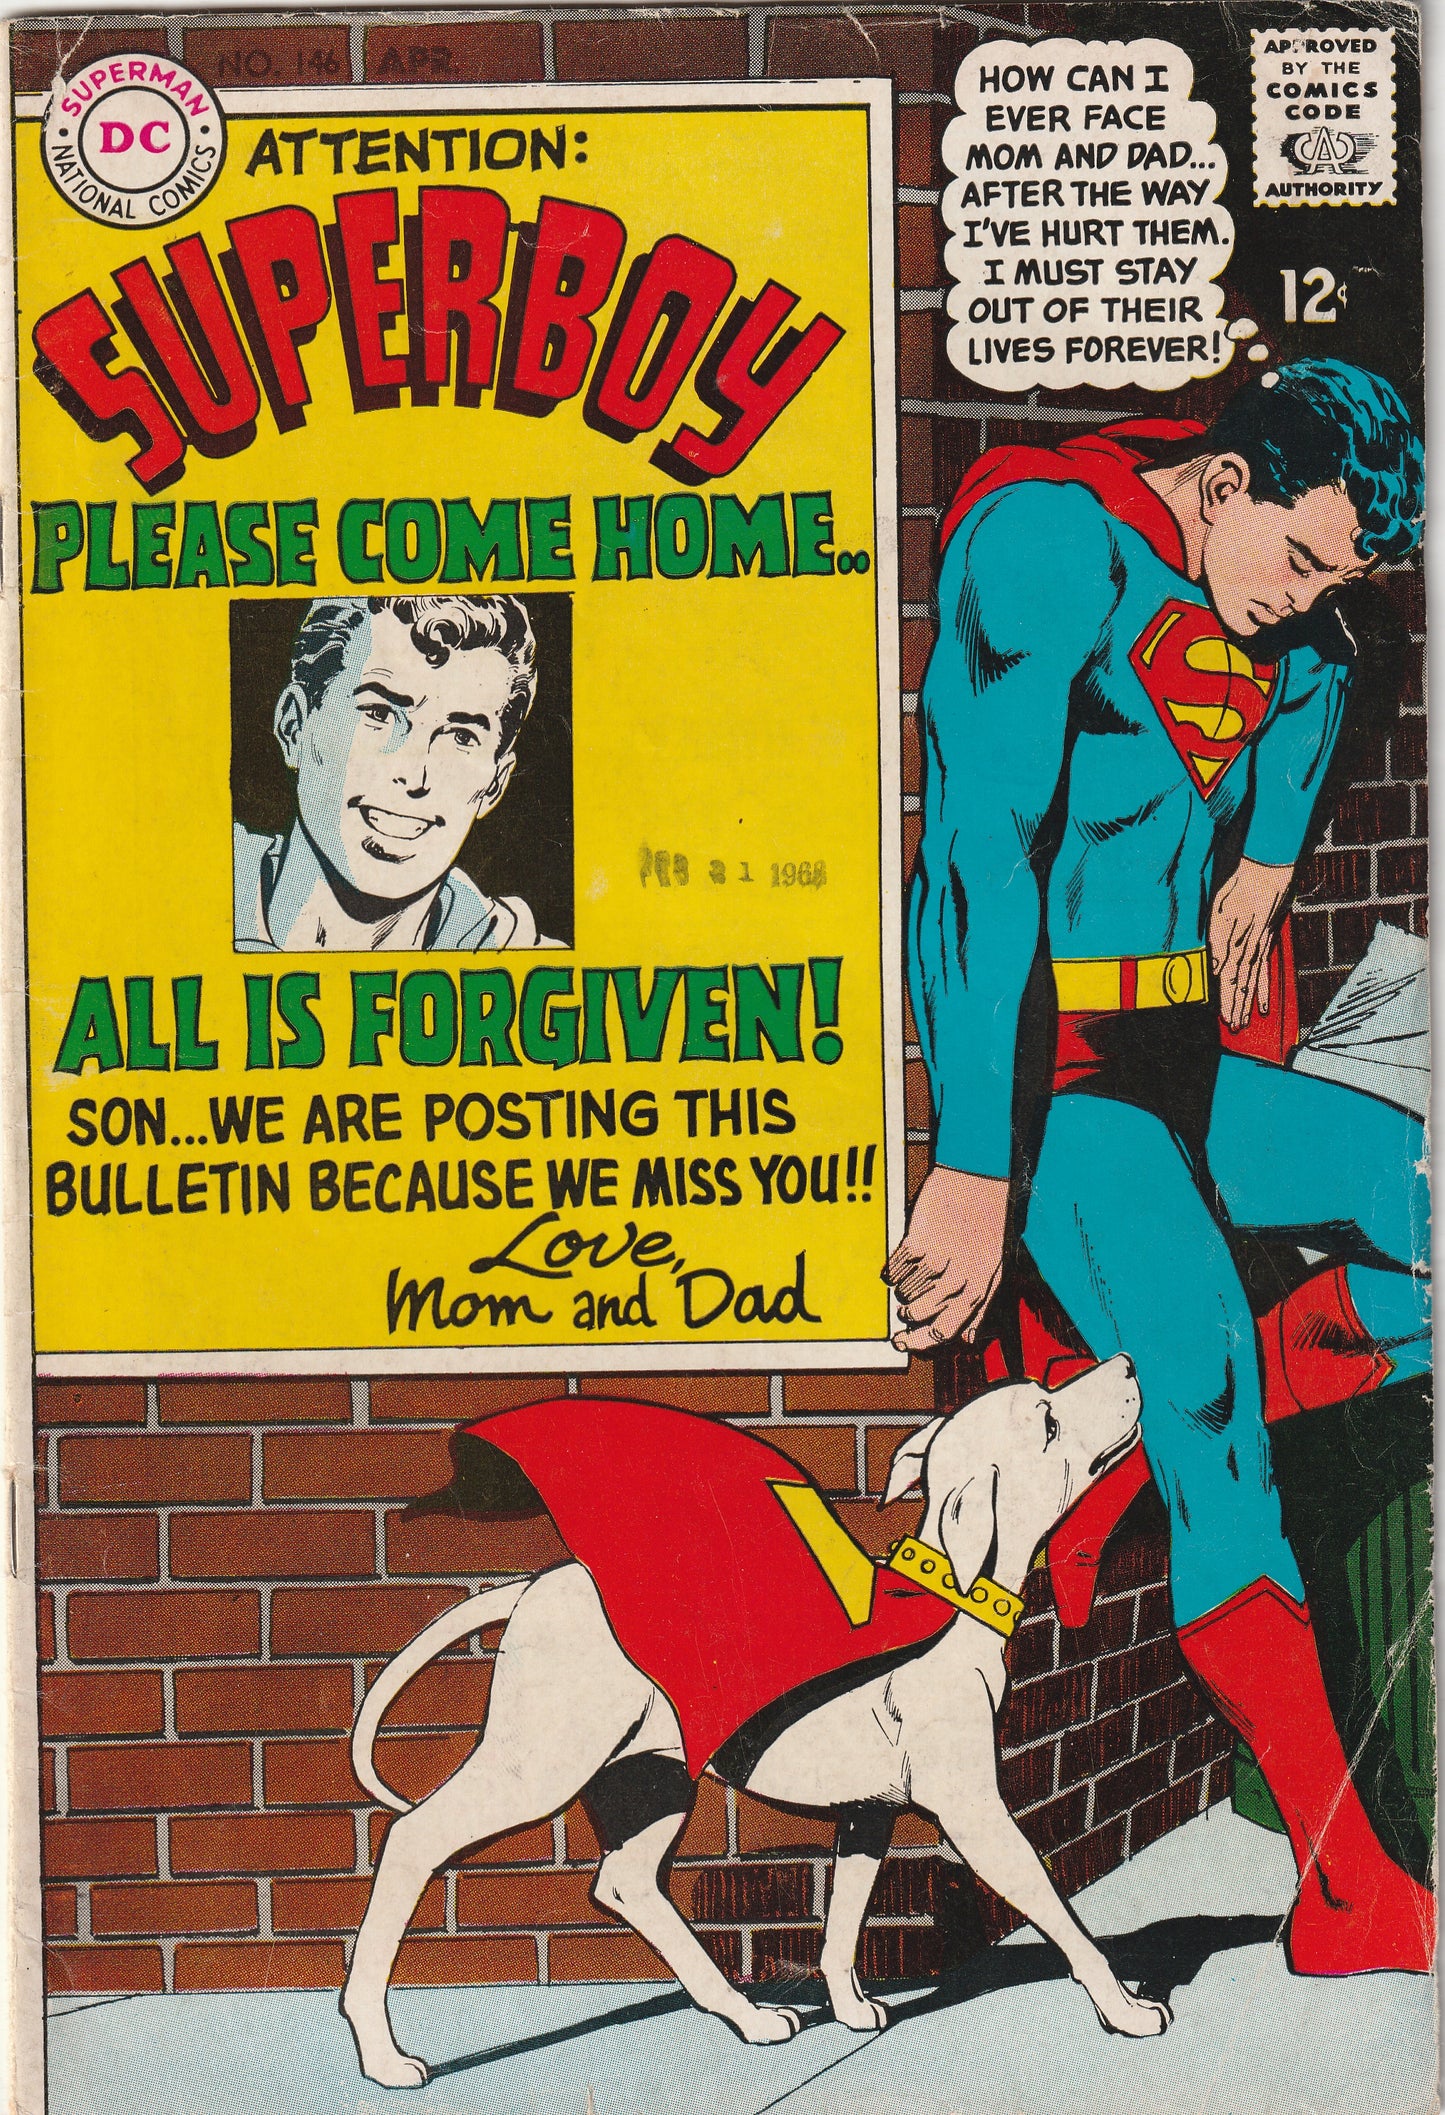 Superboy #146 (1968)